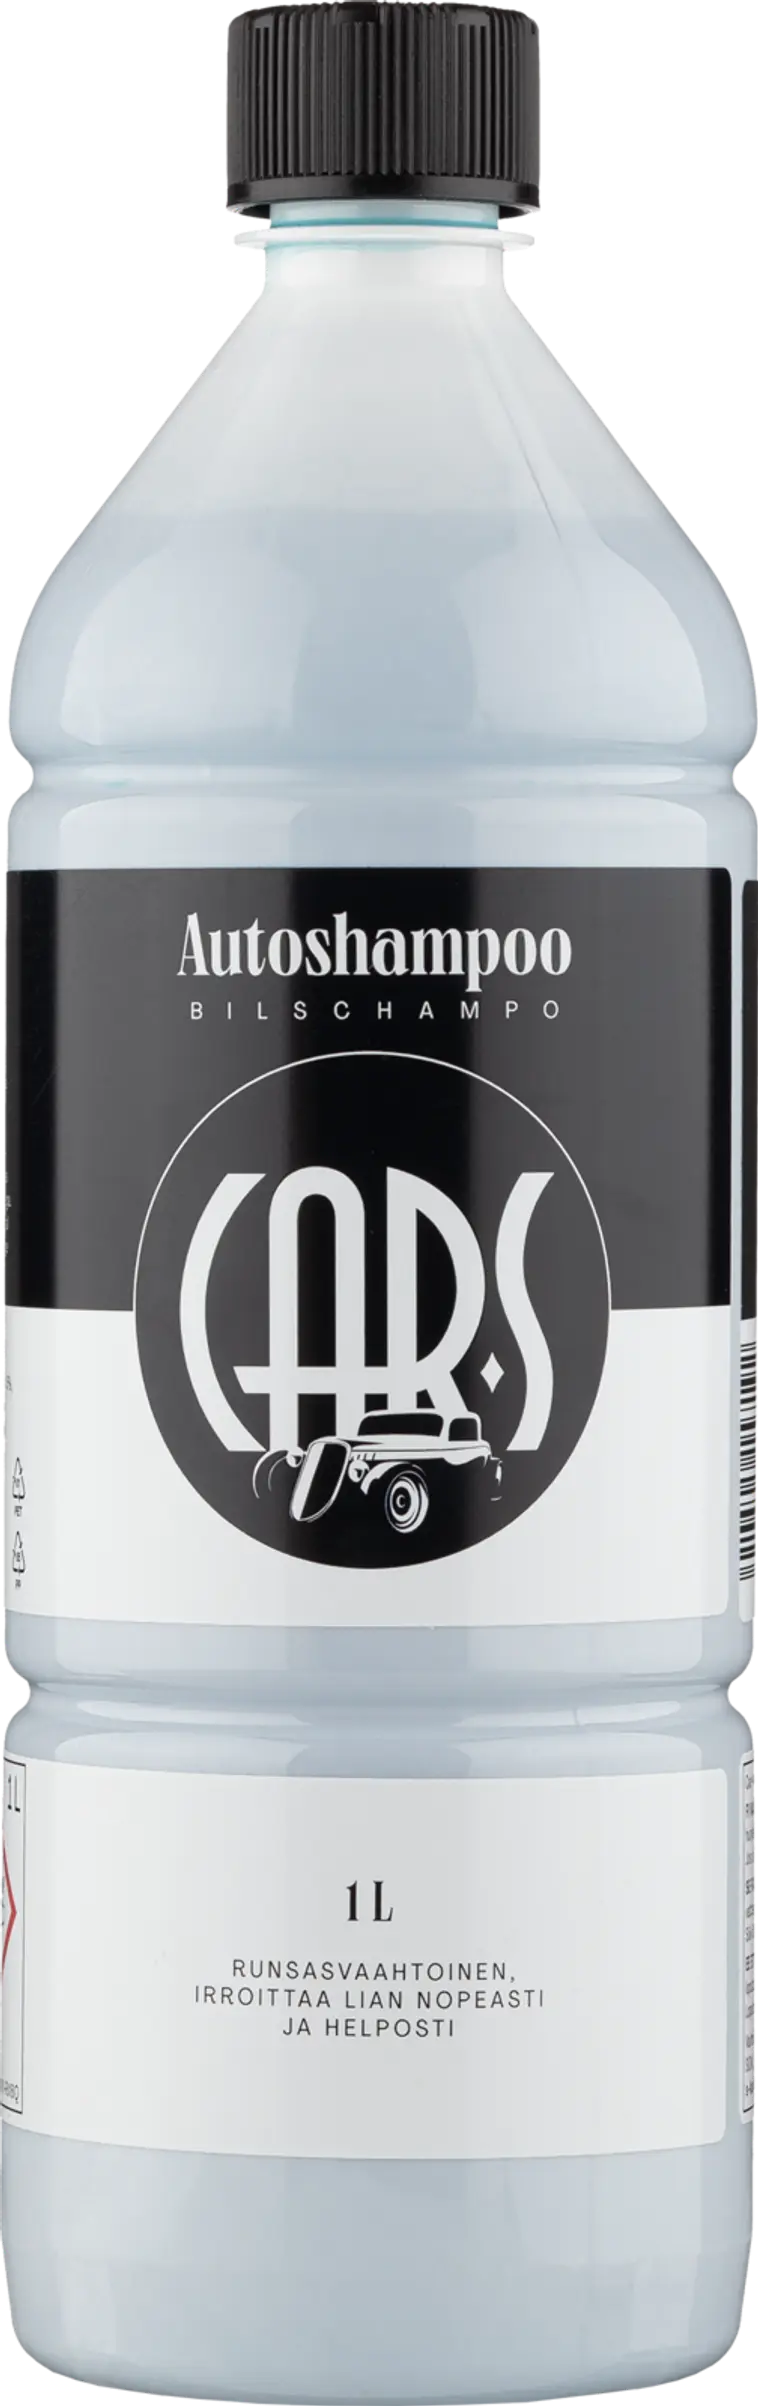 Car-S Autoshampoo 1 L